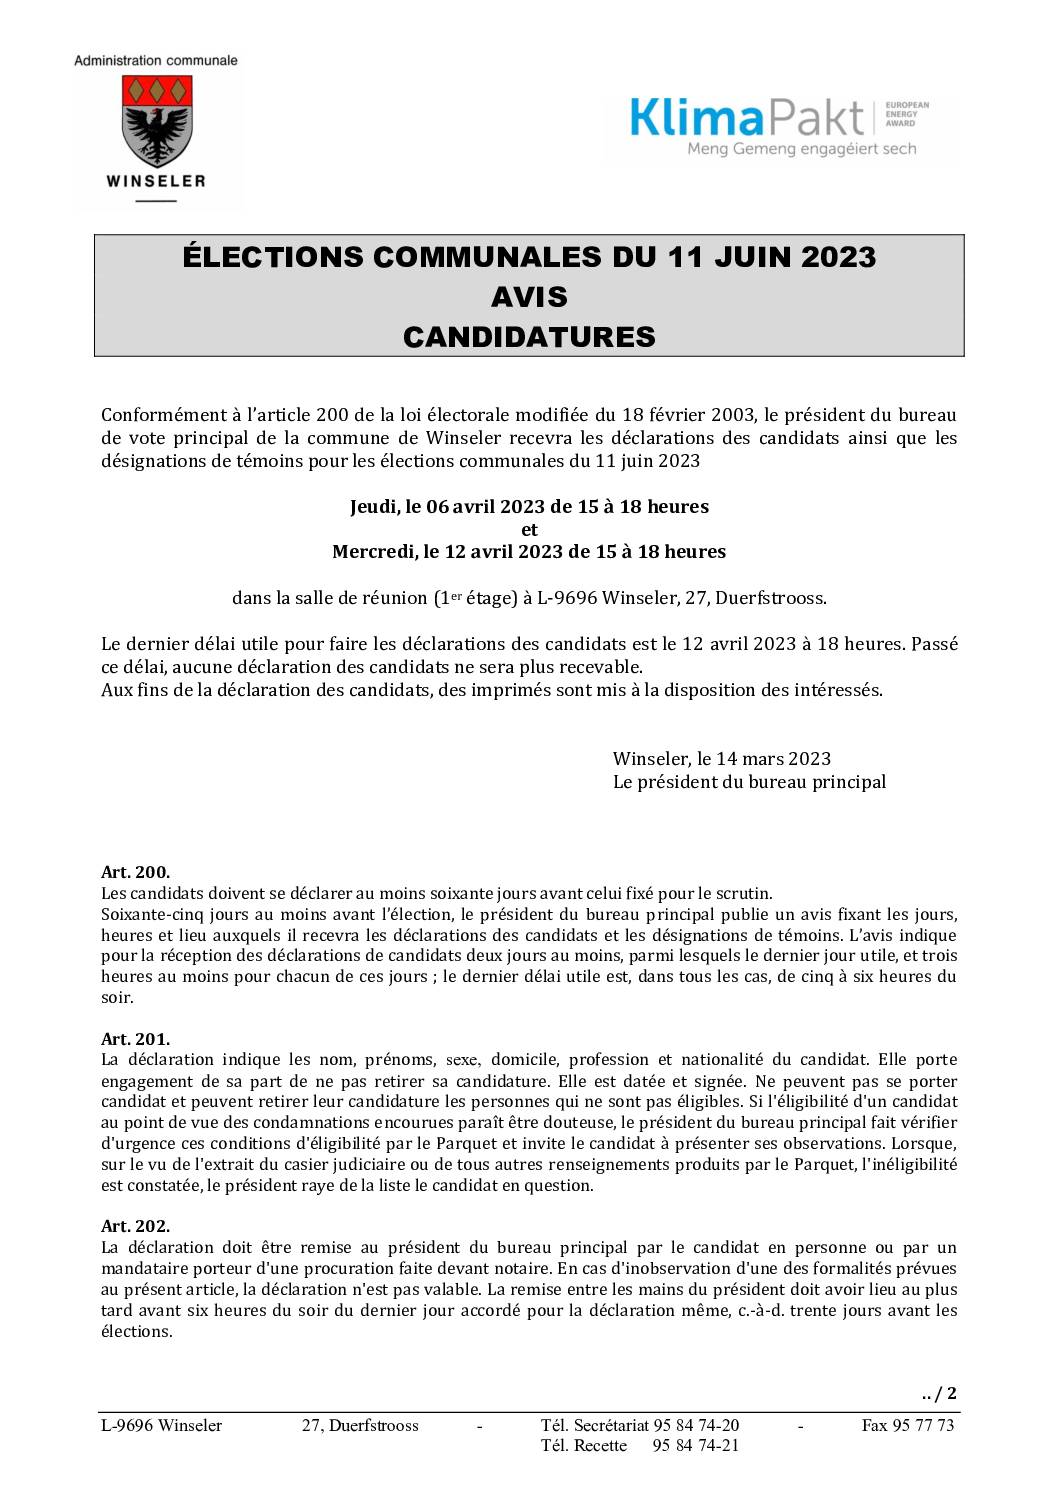 AVIS AU PUBLIC - Candidatures élections communales 2023